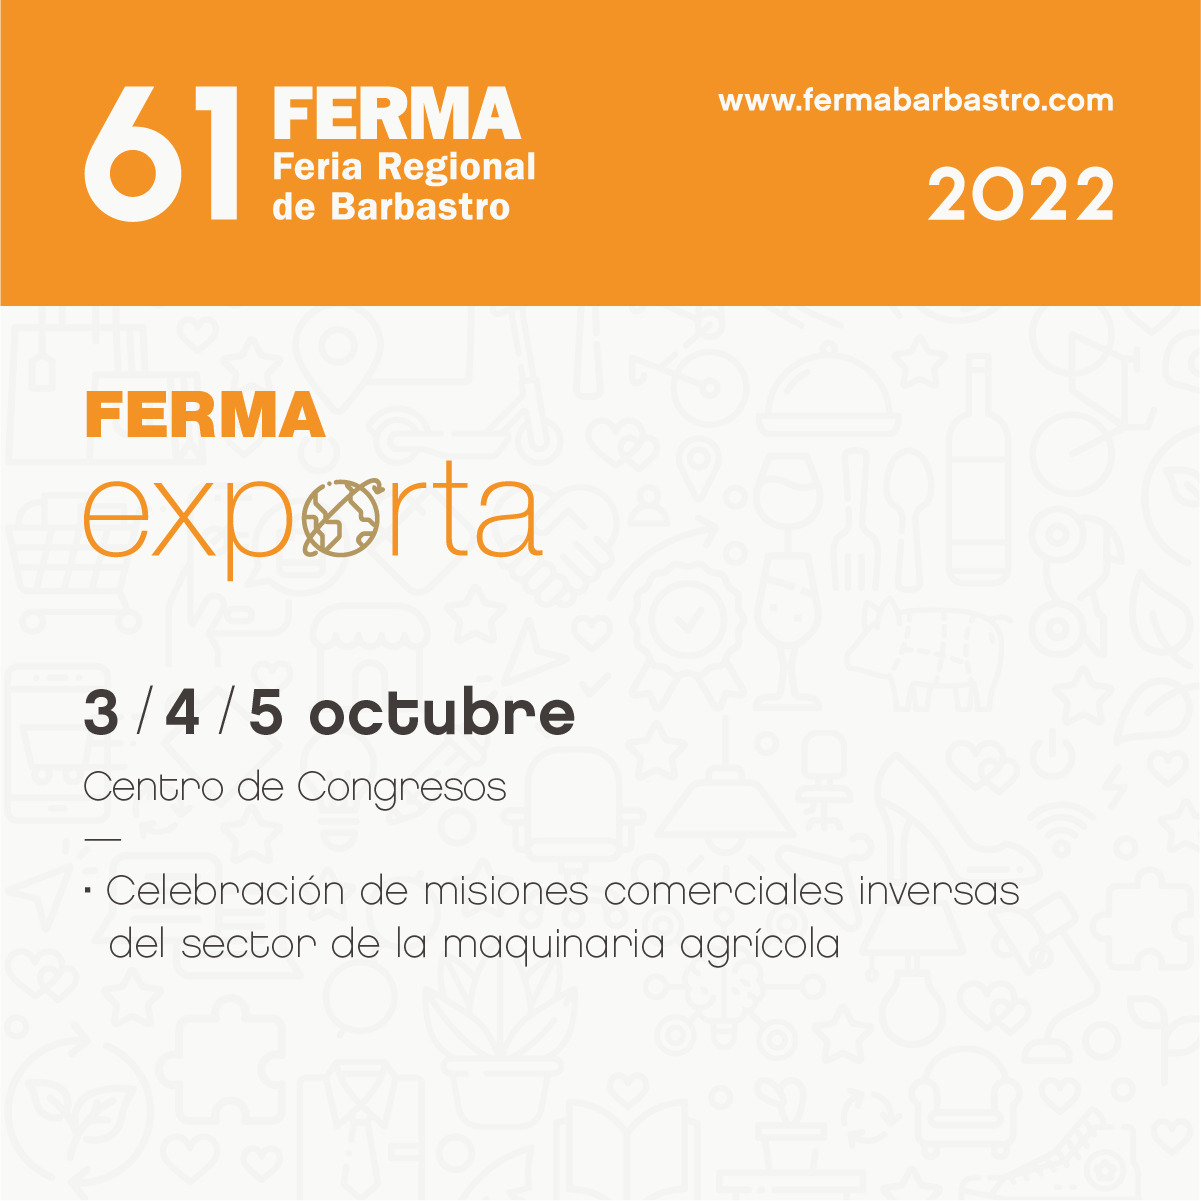 FERMA EXPORTA